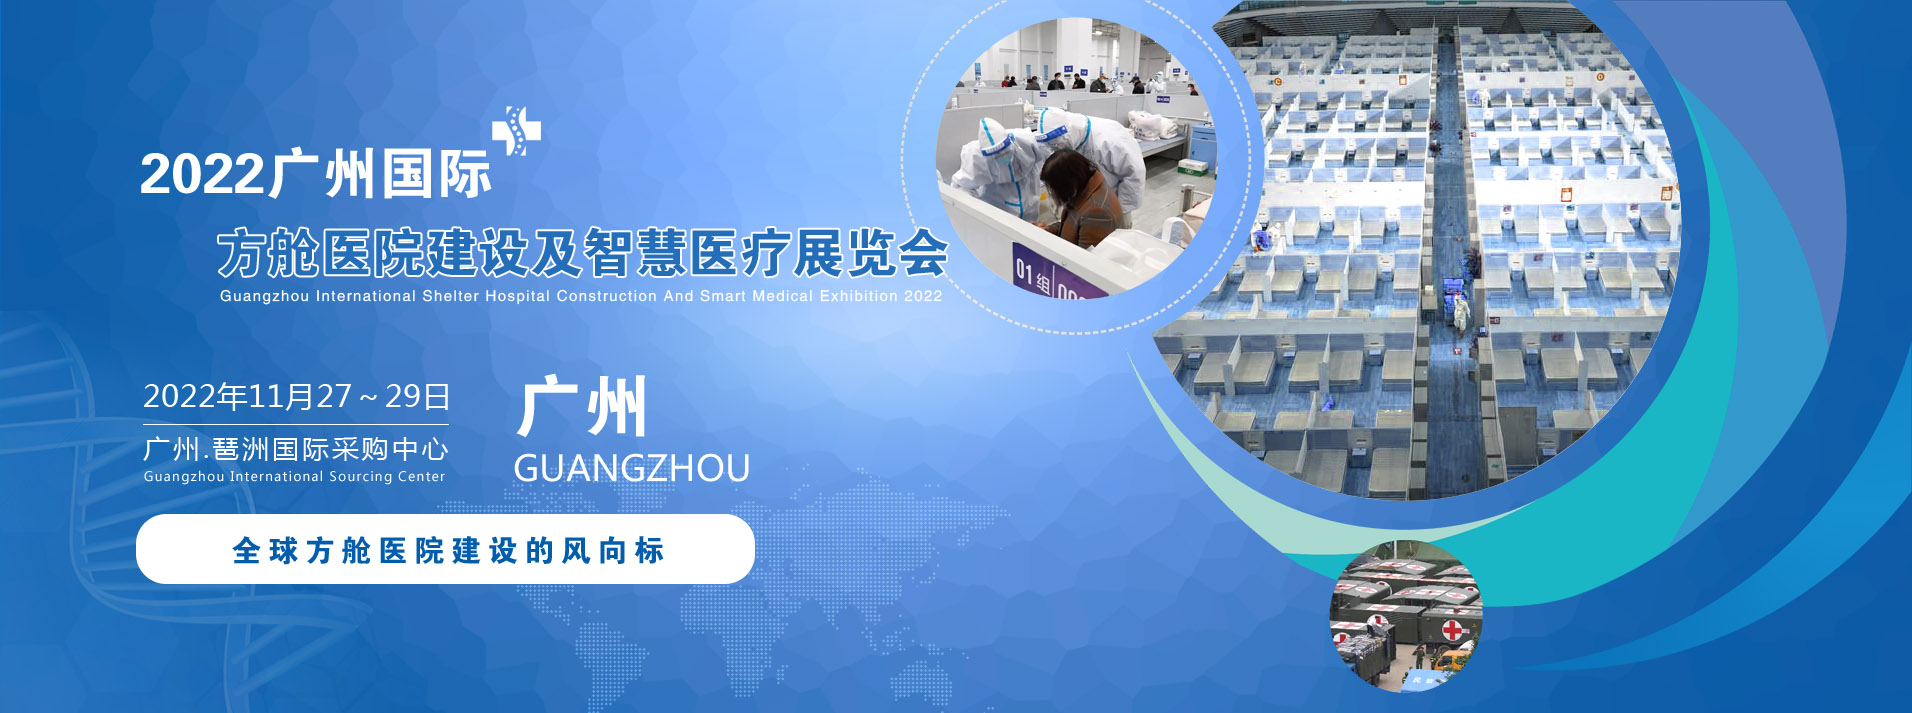 2022广州国际方舱医院建设及智慧医疗设计展览会11月27-29号